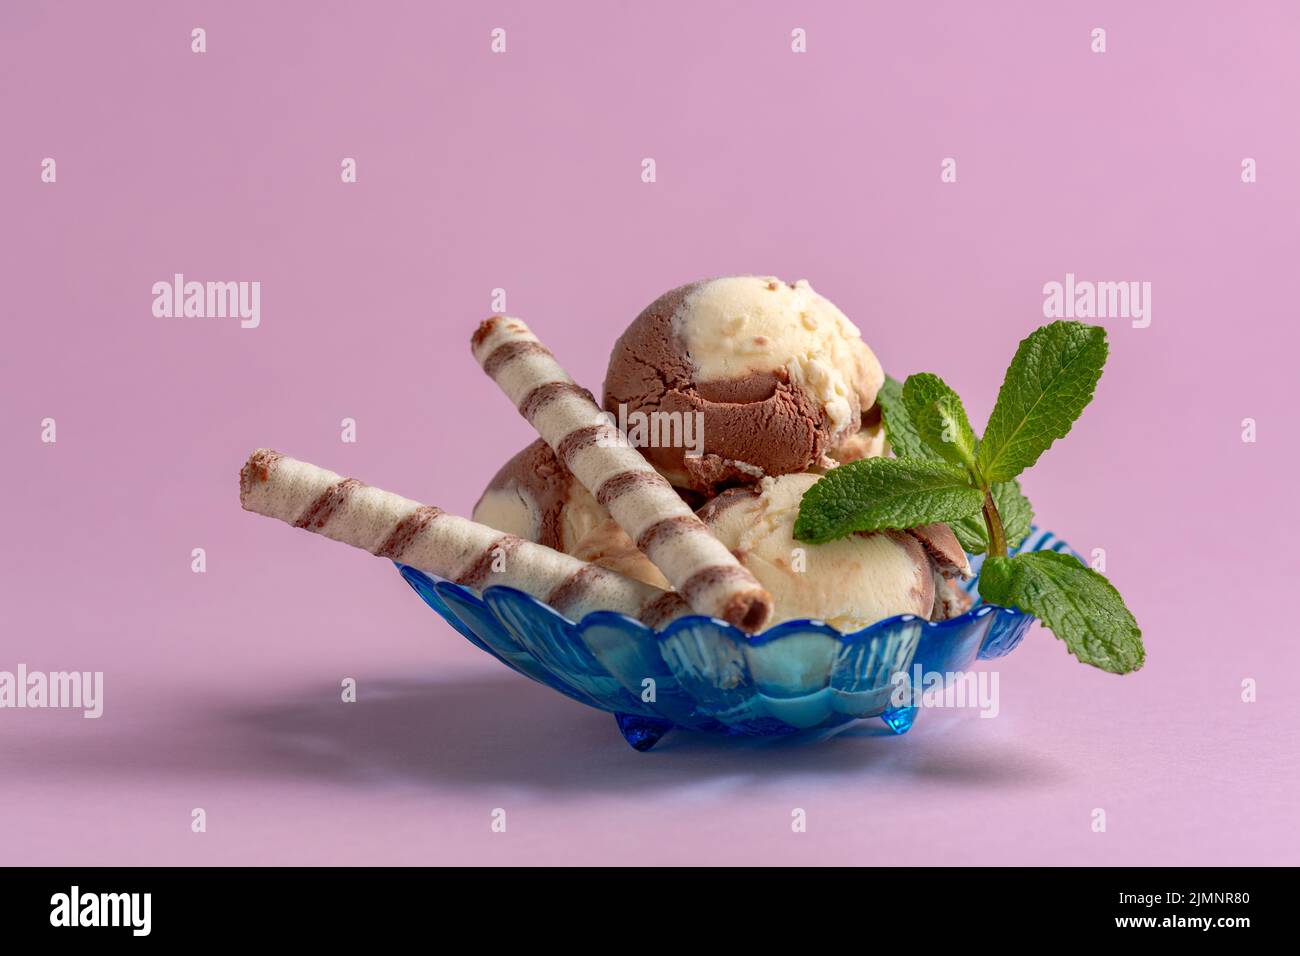 Homemade chocolate and vanilla ice cream. Stock Photo